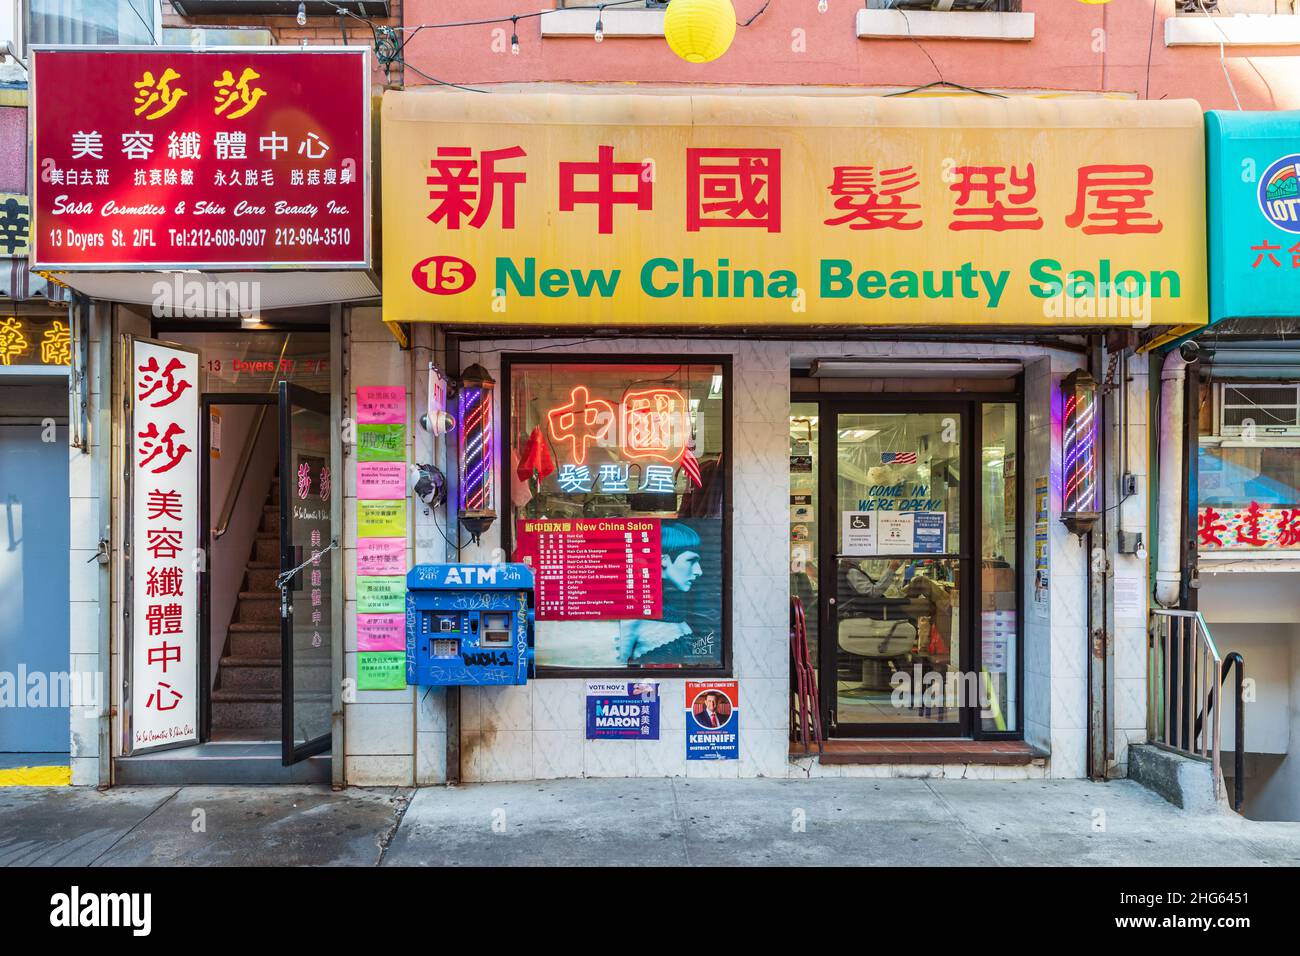 Nuevo salón de belleza china fotografías e imágenes de alta resolución -  Alamy